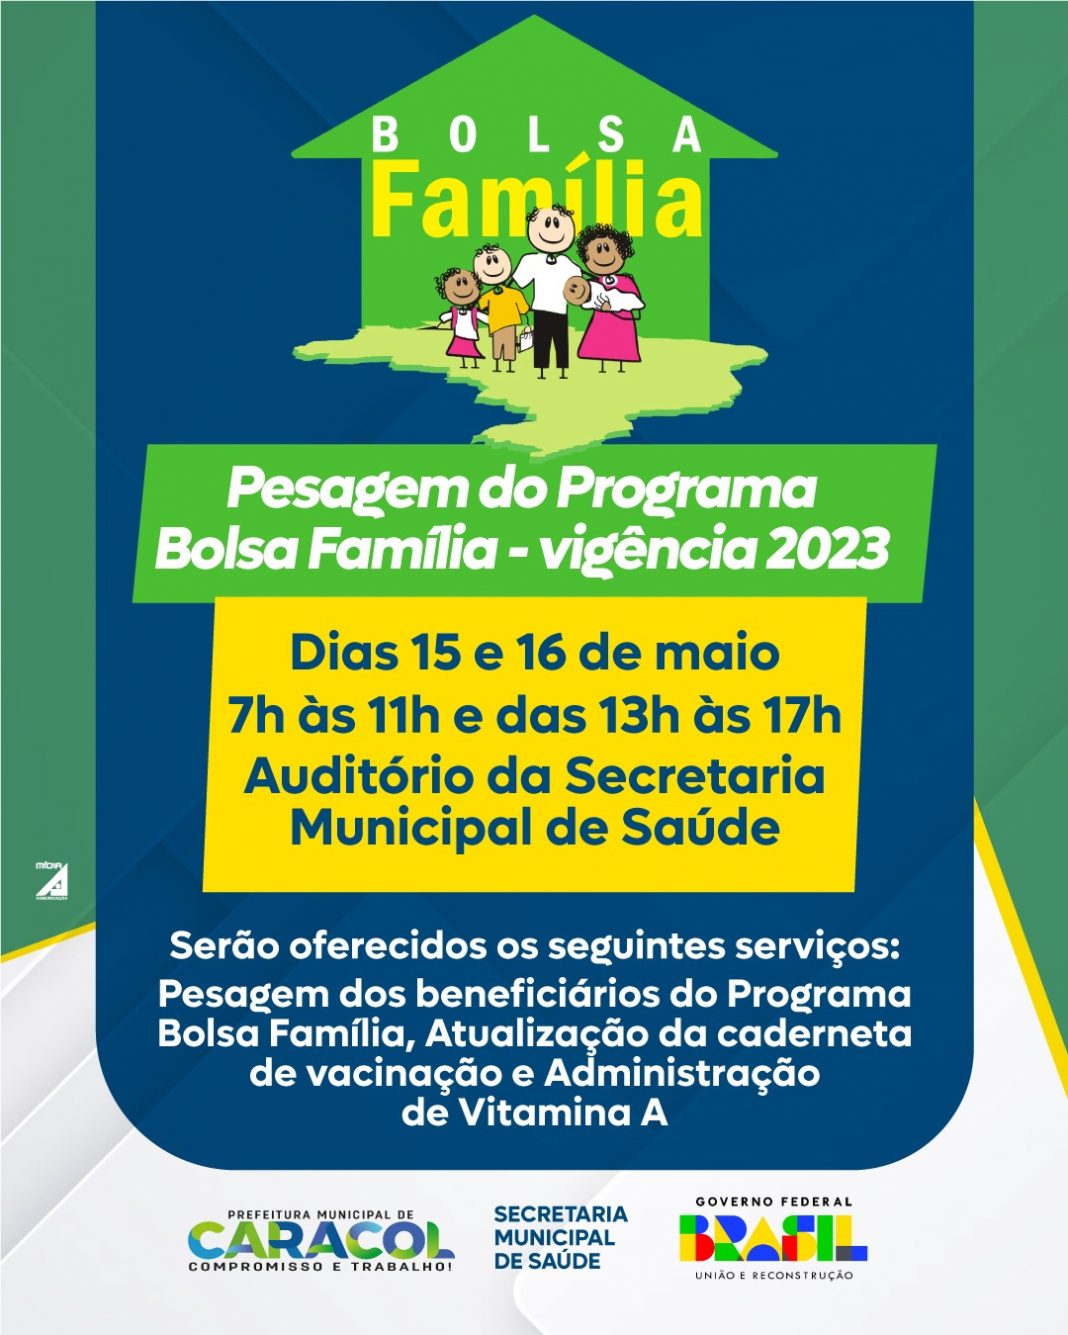 Prefeitura de Caracol realiza pesagem do programa Bolsa Família nos dias 15 e 16